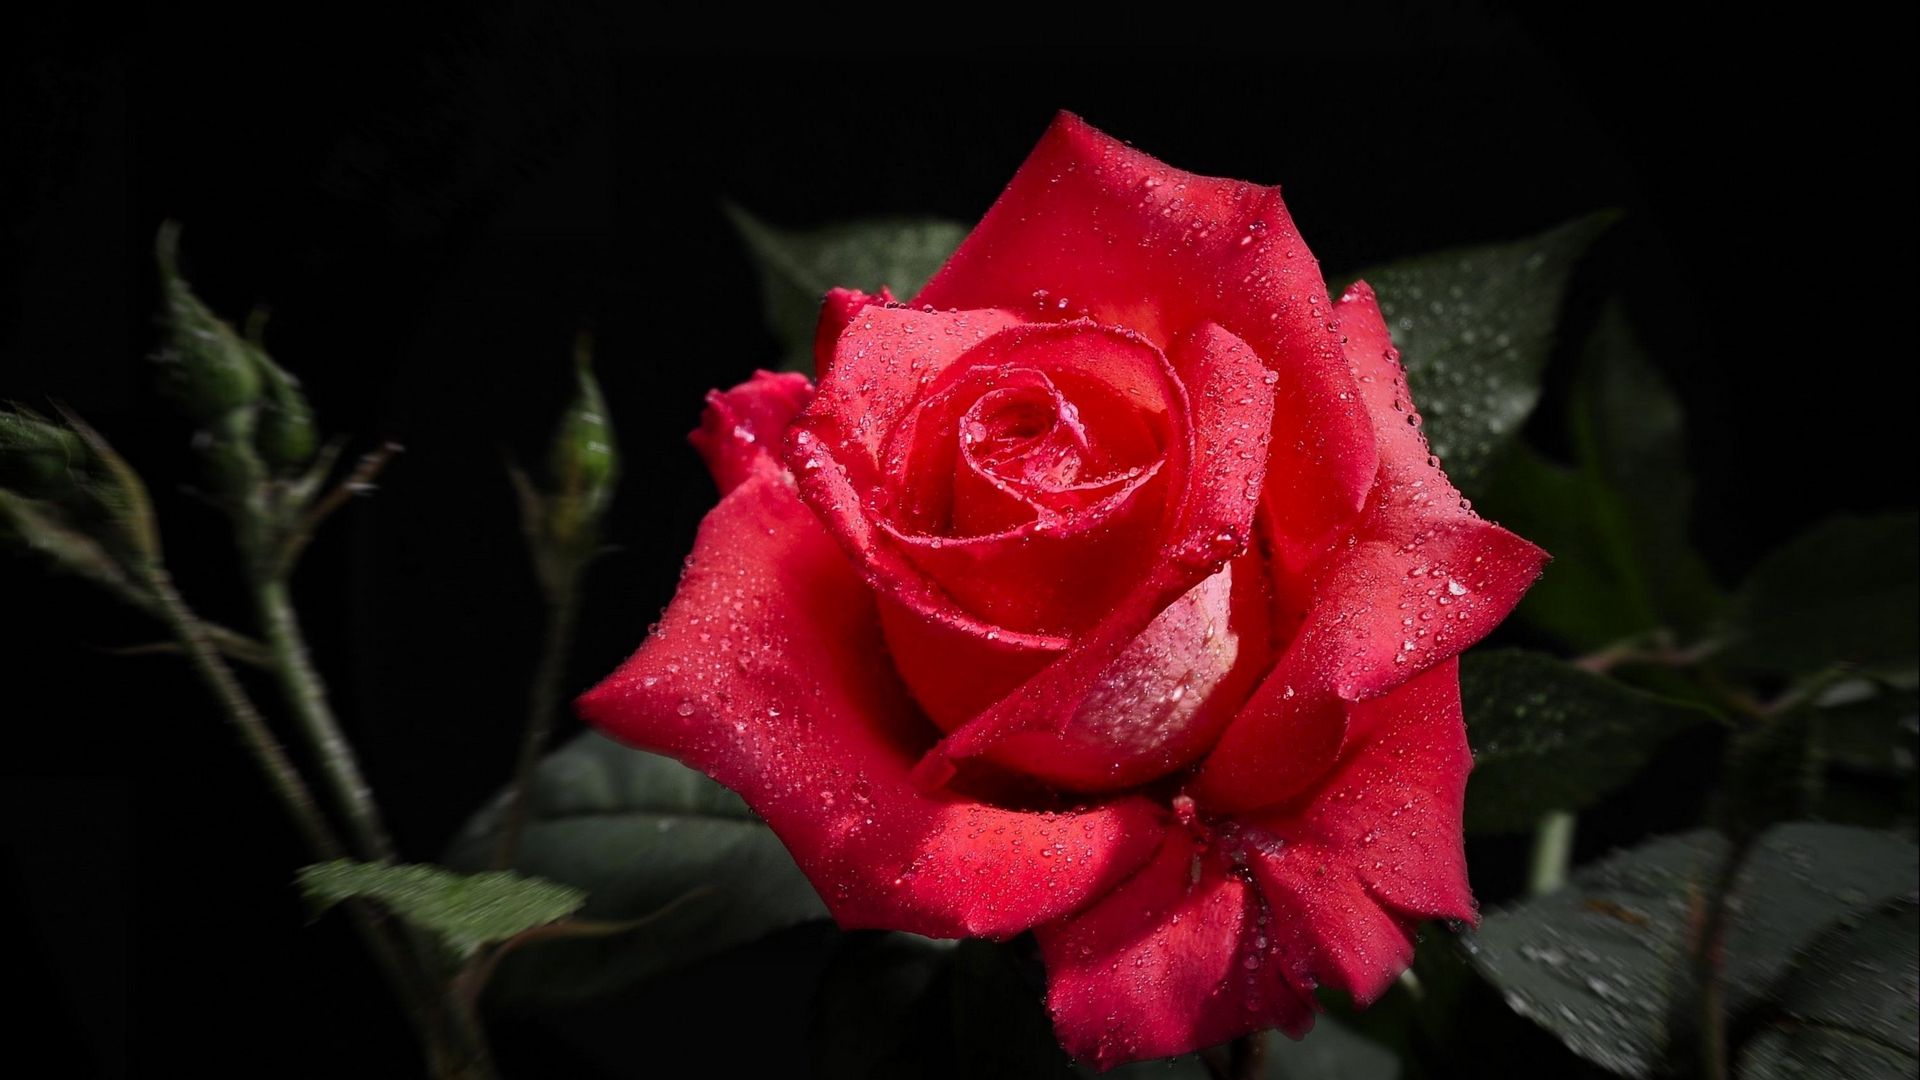 Hãy chiêm ngưỡng vẻ đẹp kiêu sa và quyến rũ của hoa hồng đen trong hình ảnh. Với sắc đen đầy bí ẩn, hoa hồng đen sẽ mang đến cho bạn sự phấn khích và thăng hoa trong tâm hồn.